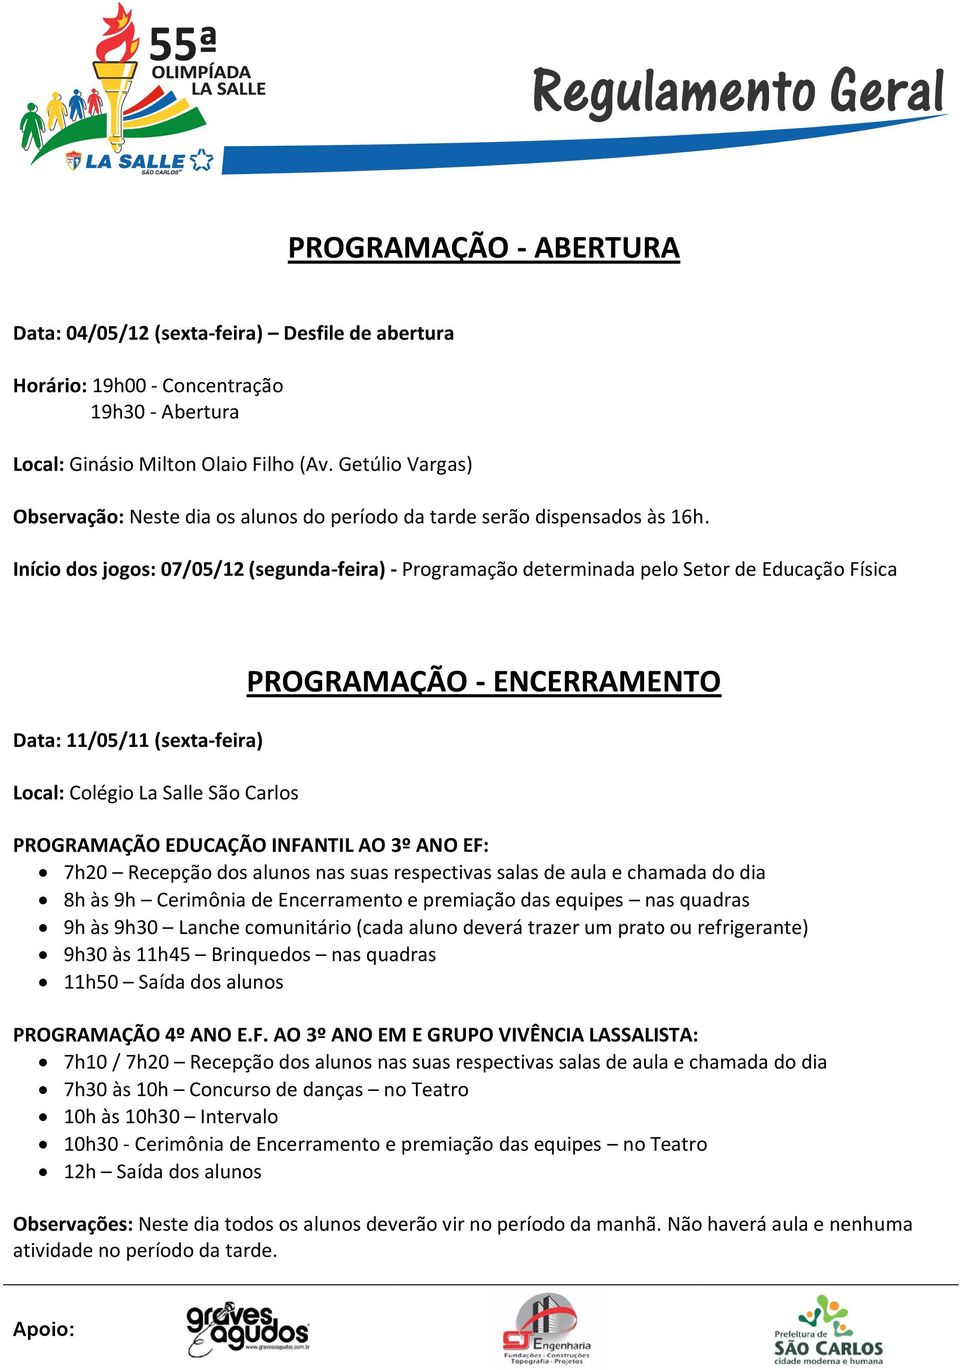 Início dos jogos: 07/05/12 (segunda-feira) - Programação determinada pelo Setor de Educação Física Data: 11/05/11 (sexta-feira) Local: Colégio La Salle São Carlos PROGRAMAÇÃO - ENCERRAMENTO